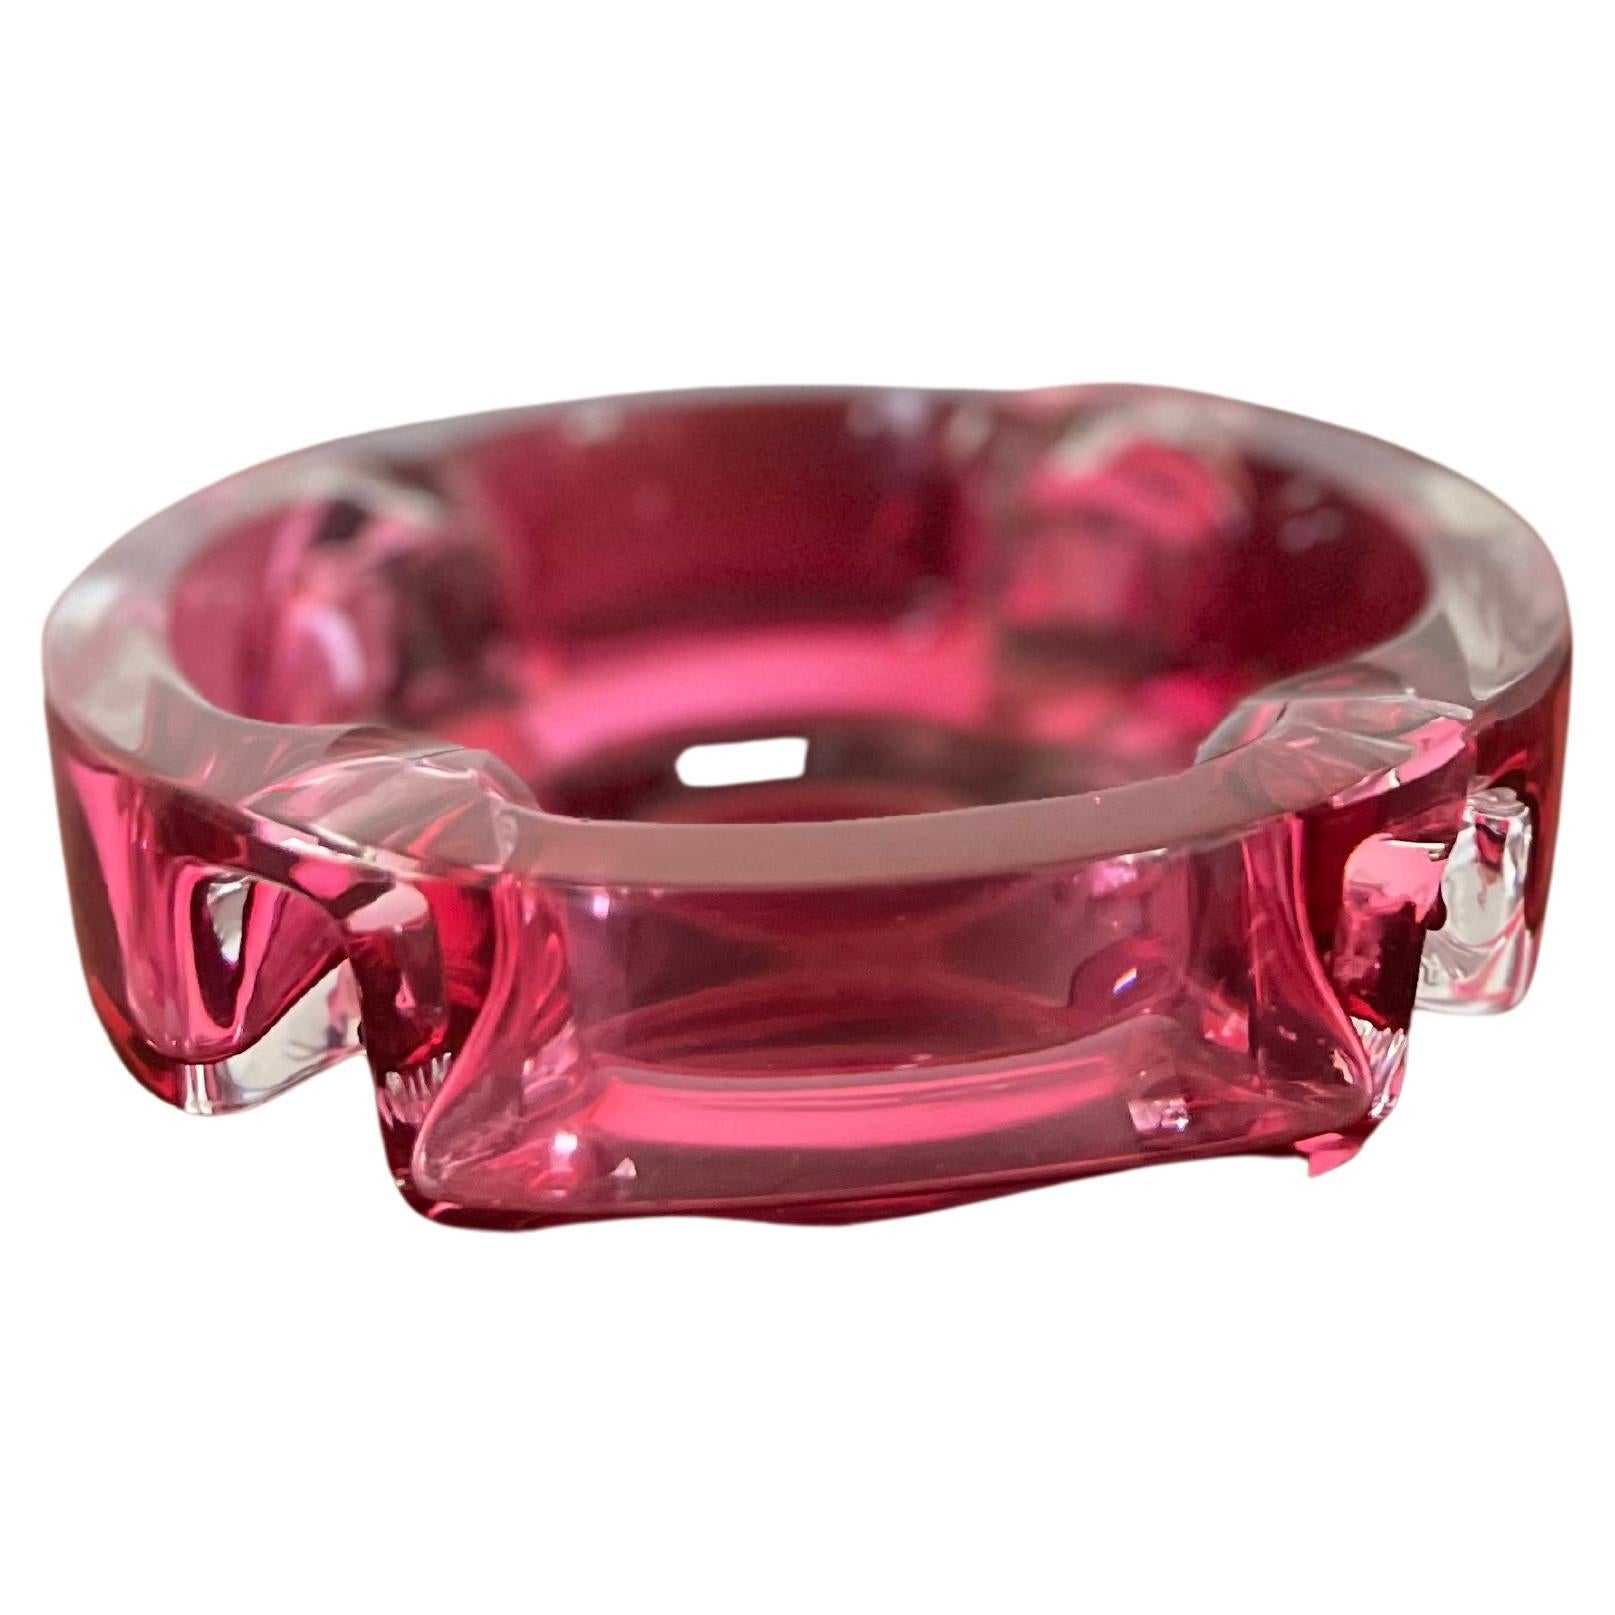 Cendrier rose en cristal pour Val Saint Lambert, poids en papier